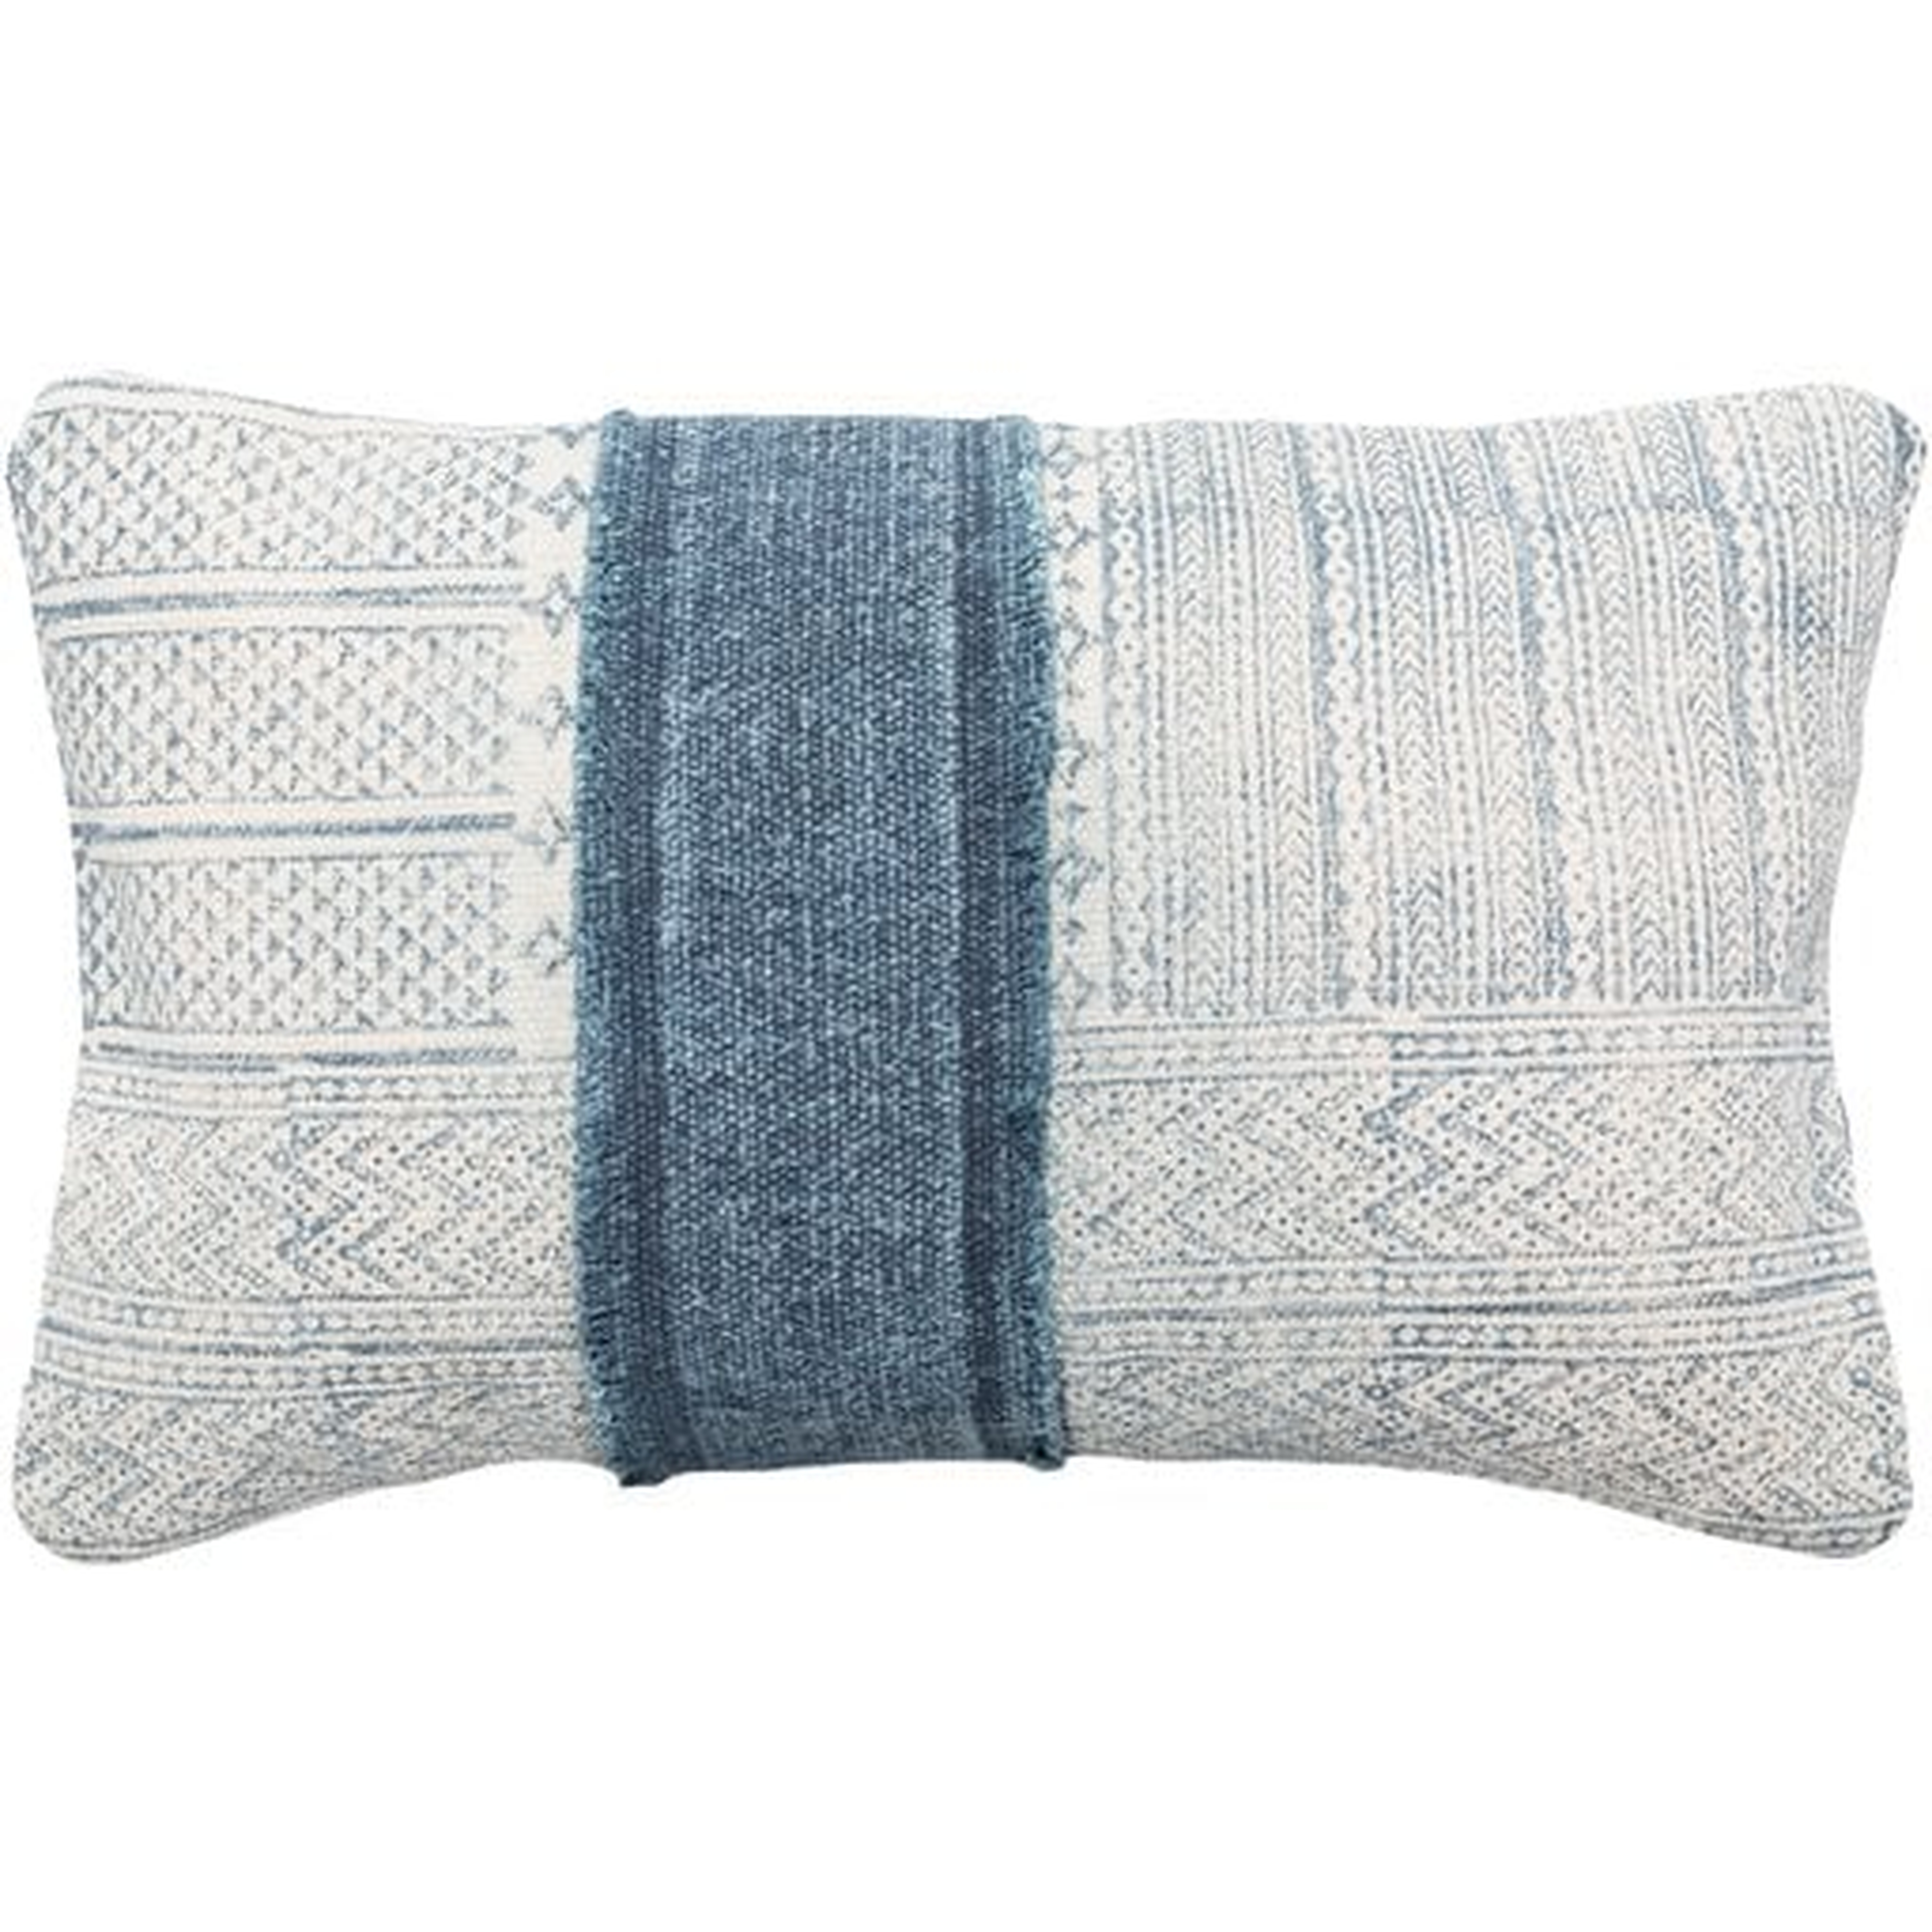 Mara Lumbar Pillow Cover, 22" x 14", Navy - Cove Goods